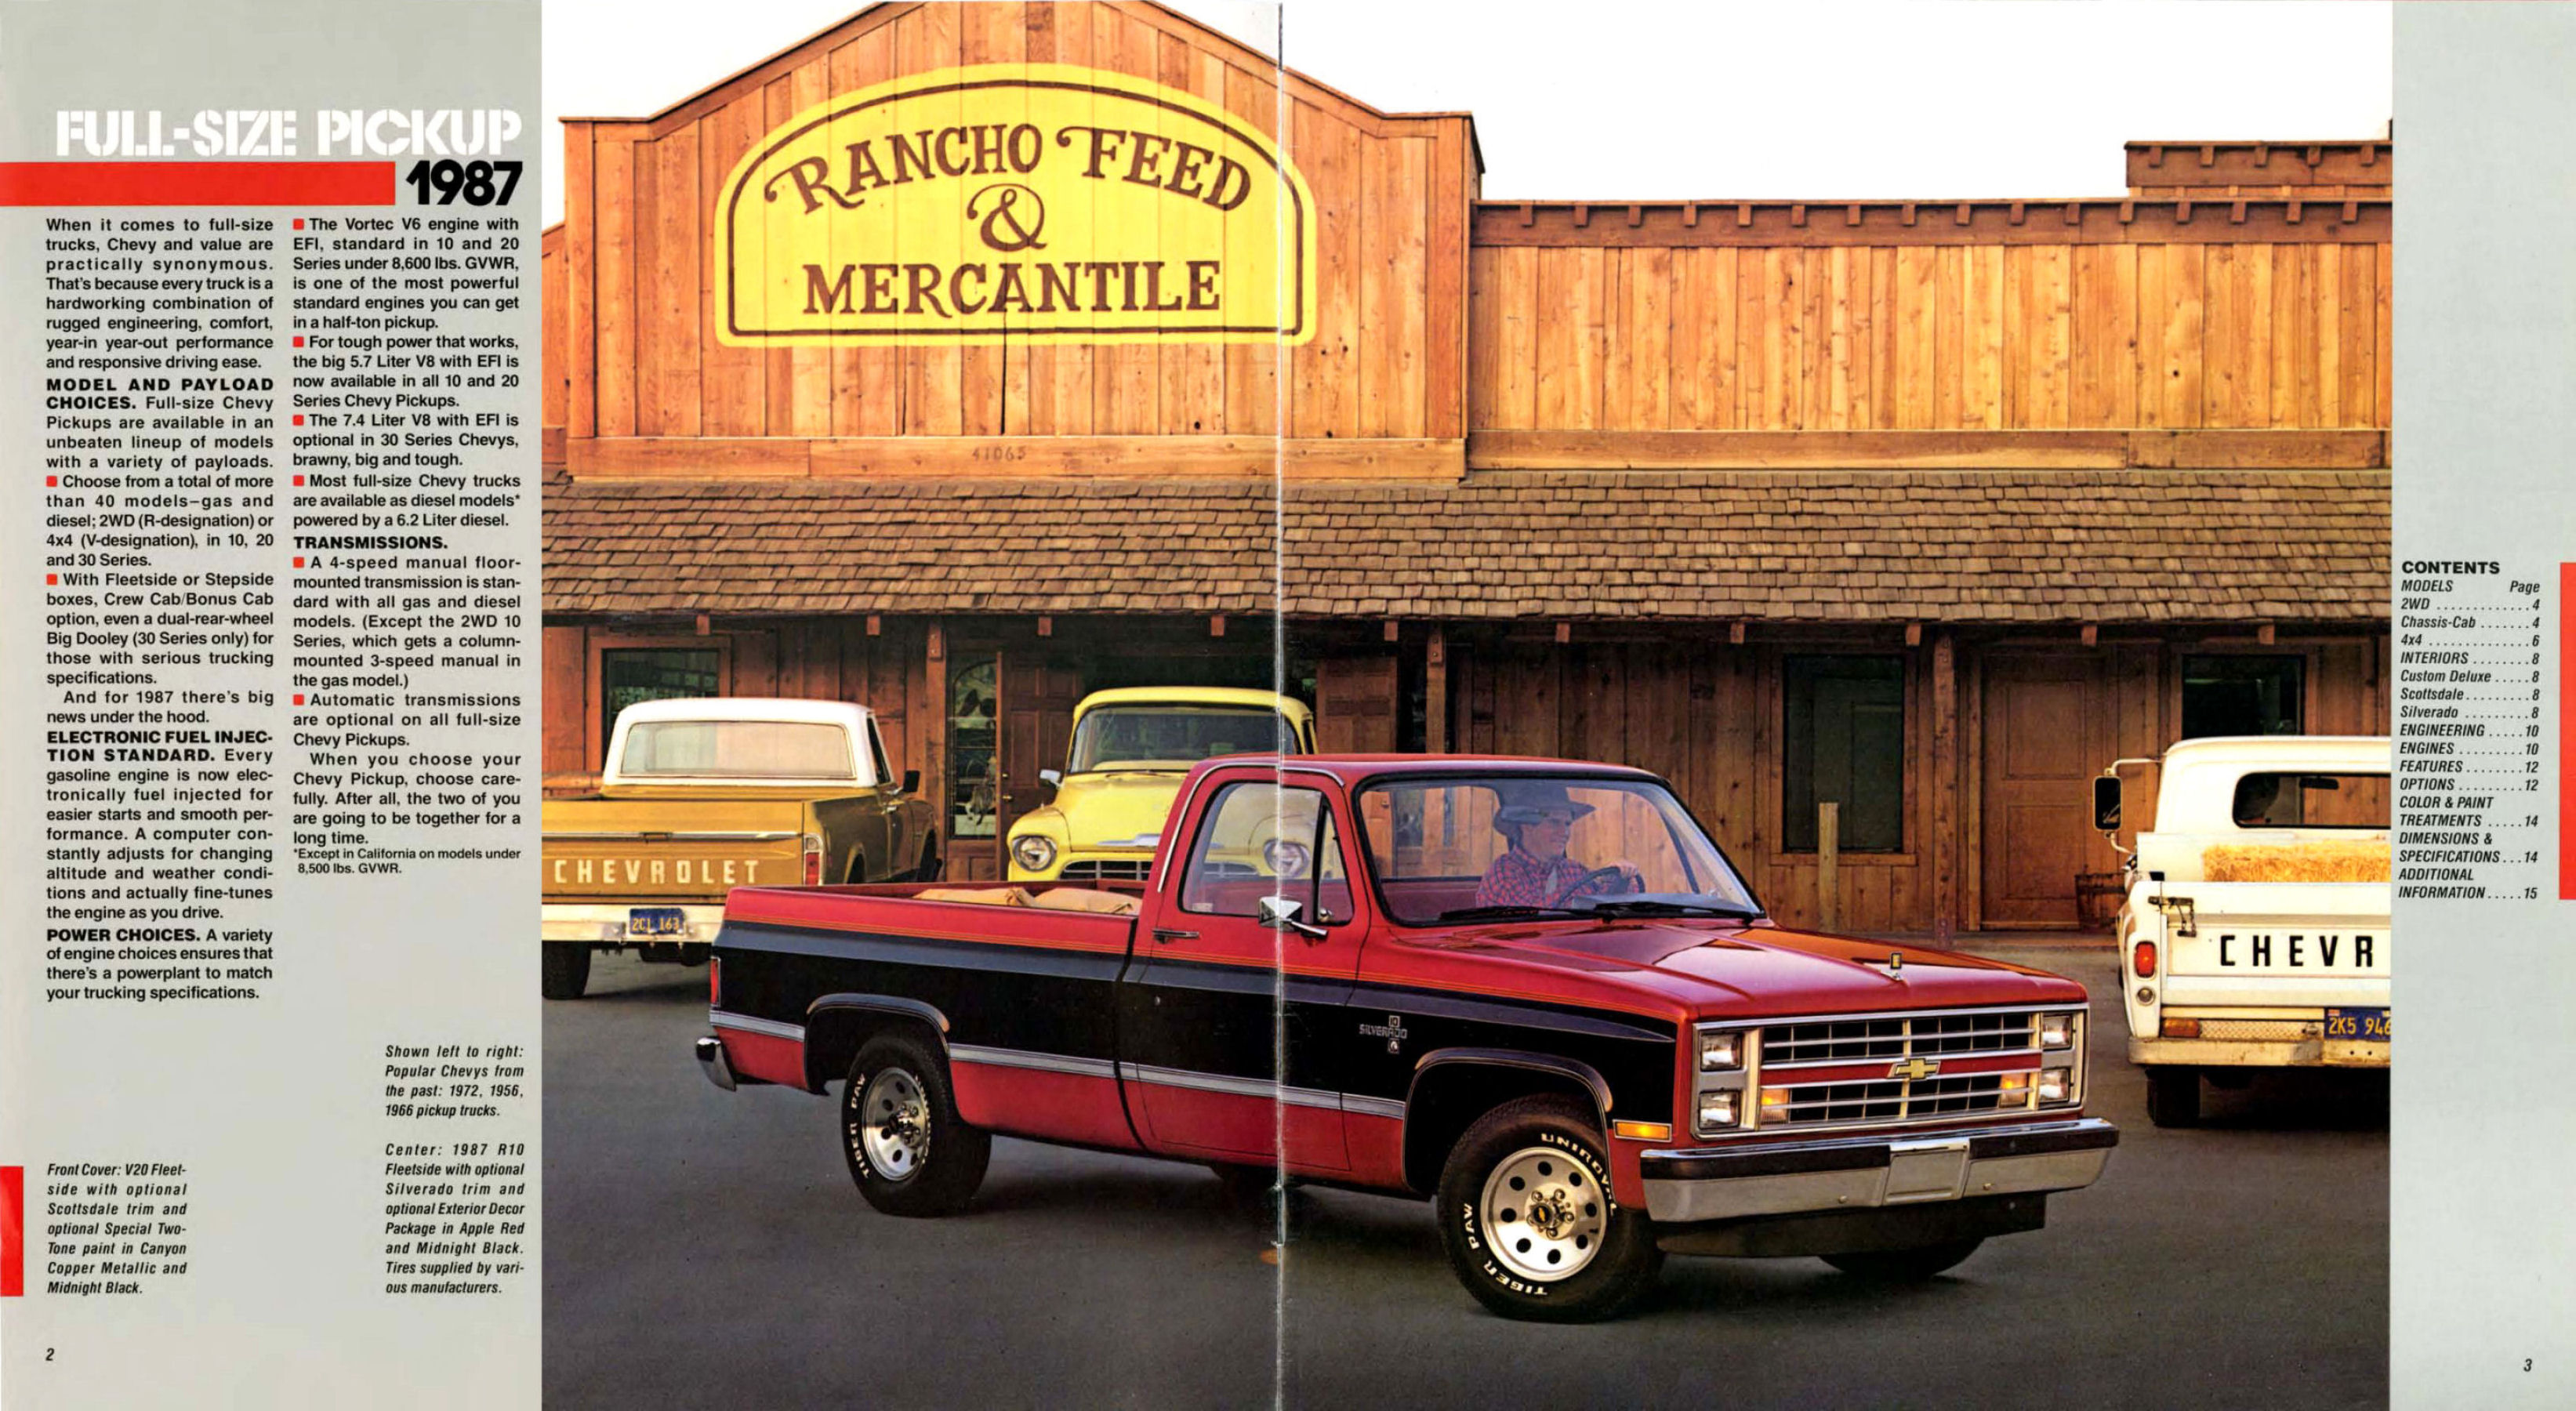 1987 Chevrolet Full Size Pickup-02-03